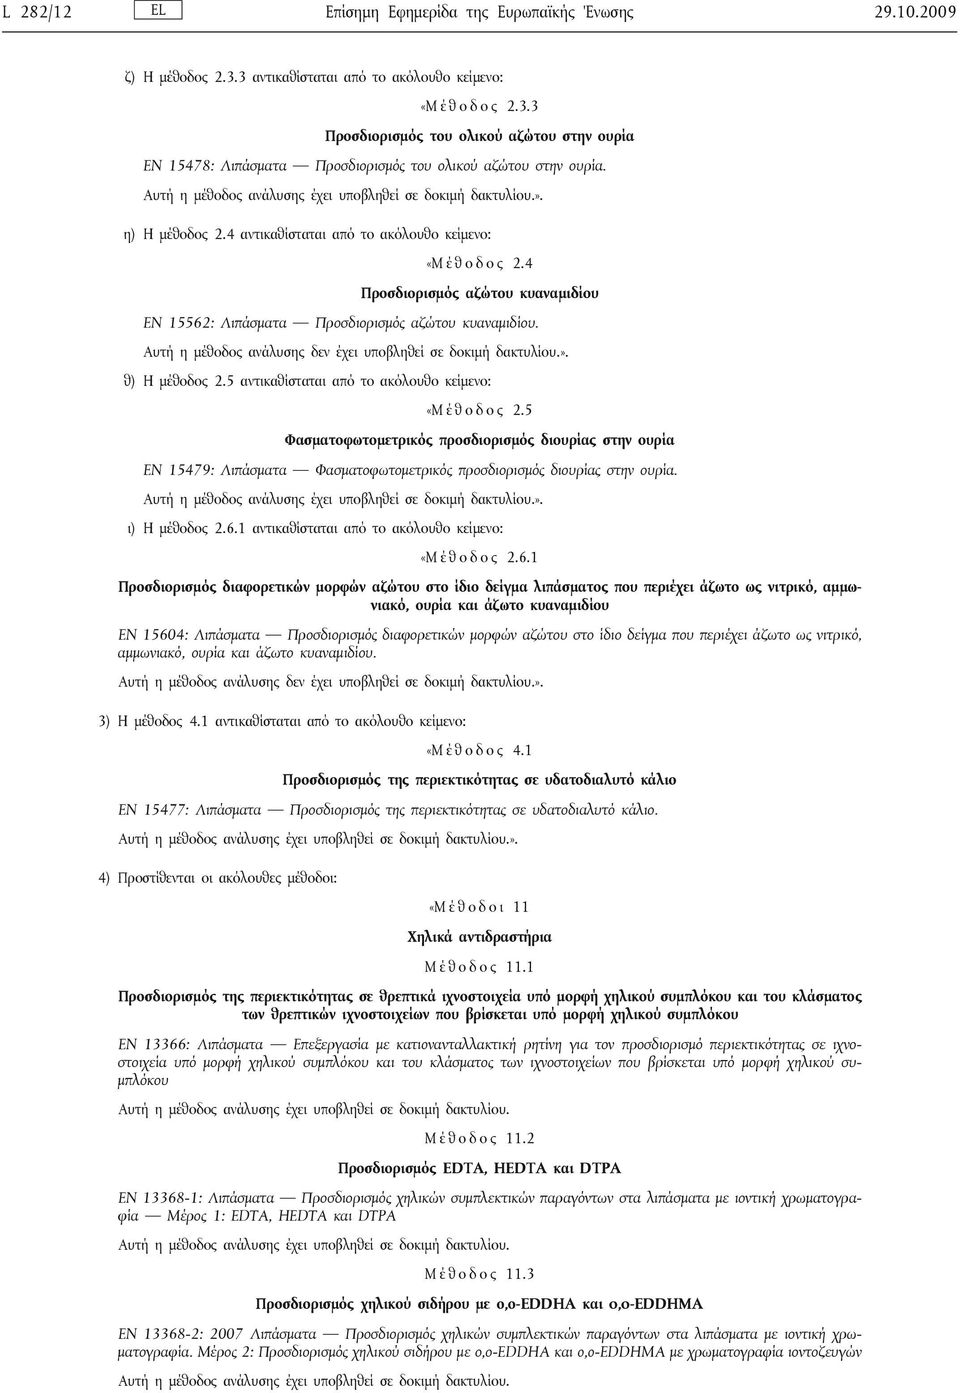 5 αντικαθίσταται από το ακόλουθο κείμενο: «Μ έ θ ο δ ο ς 2.5 Φασματοφωτομετρικός προσδιορισμός διουρίας στην ουρία EN 15479: Λιπάσματα Φασματοφωτομετρικός προσδιορισμός διουρίας στην ουρία.».